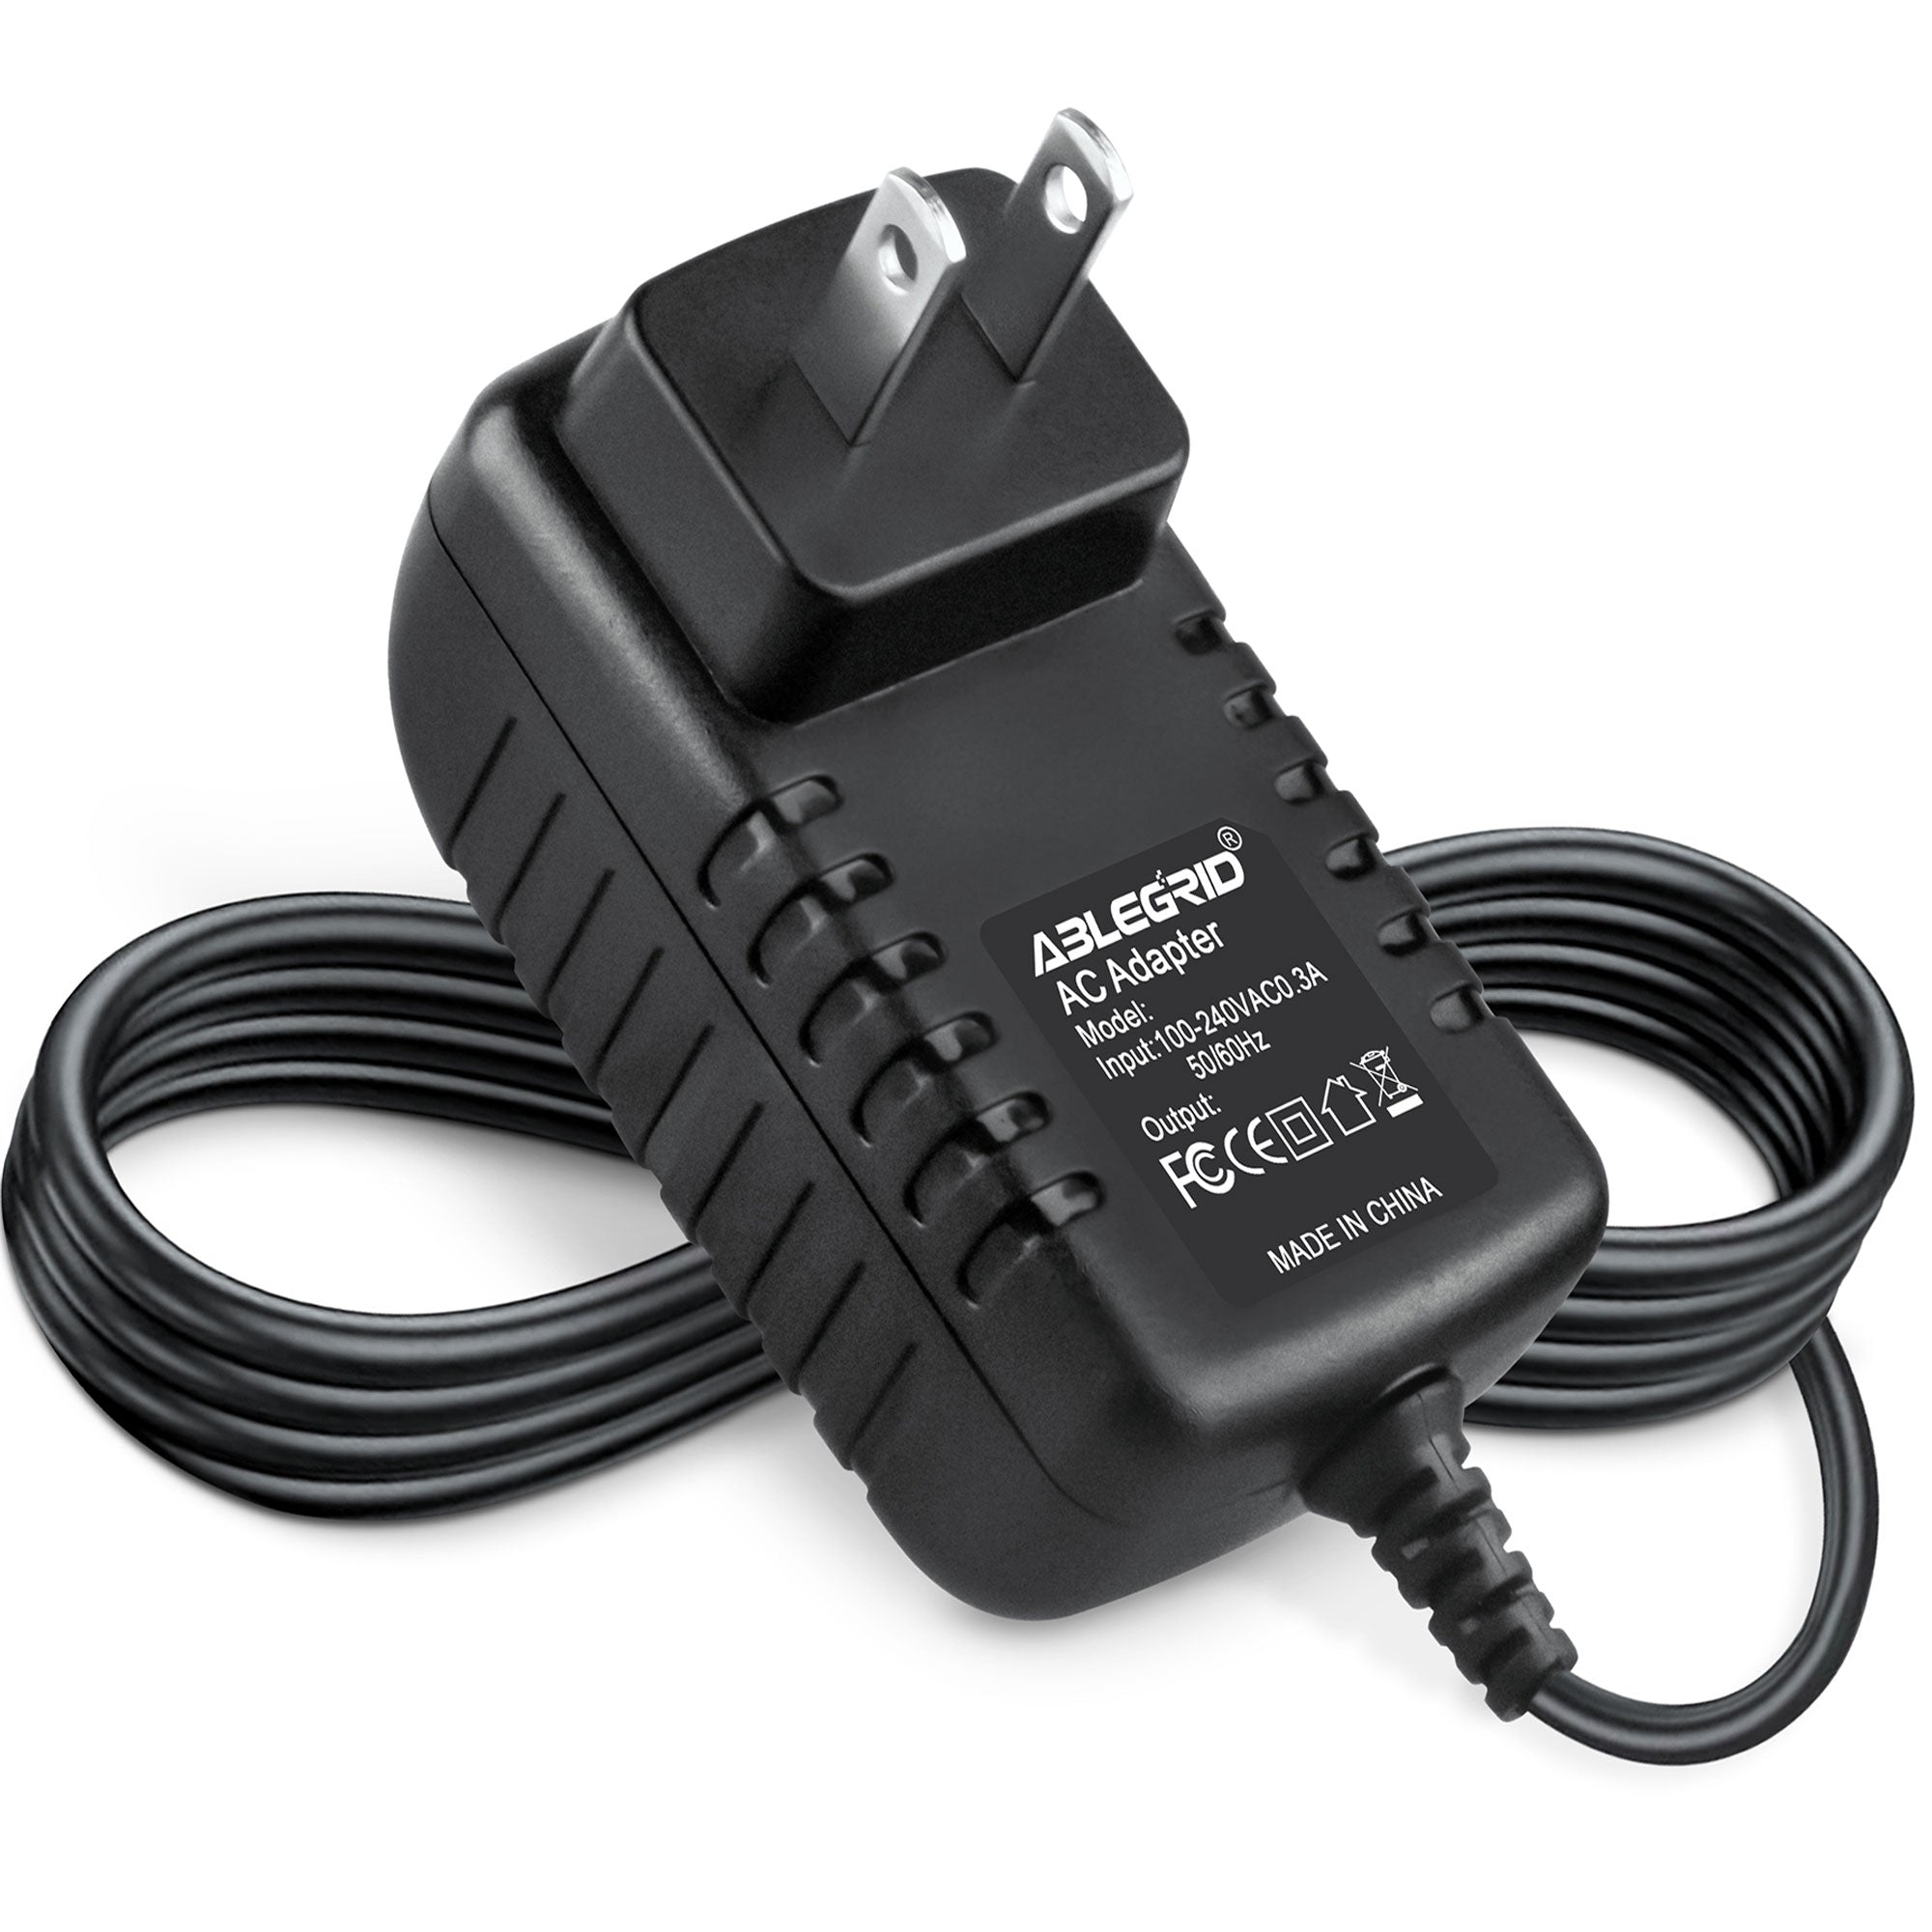 AbleGrid AC Power Adapter for Omron M2 Basic model HEM-7116-E8(V) Blood Pressure Monitor